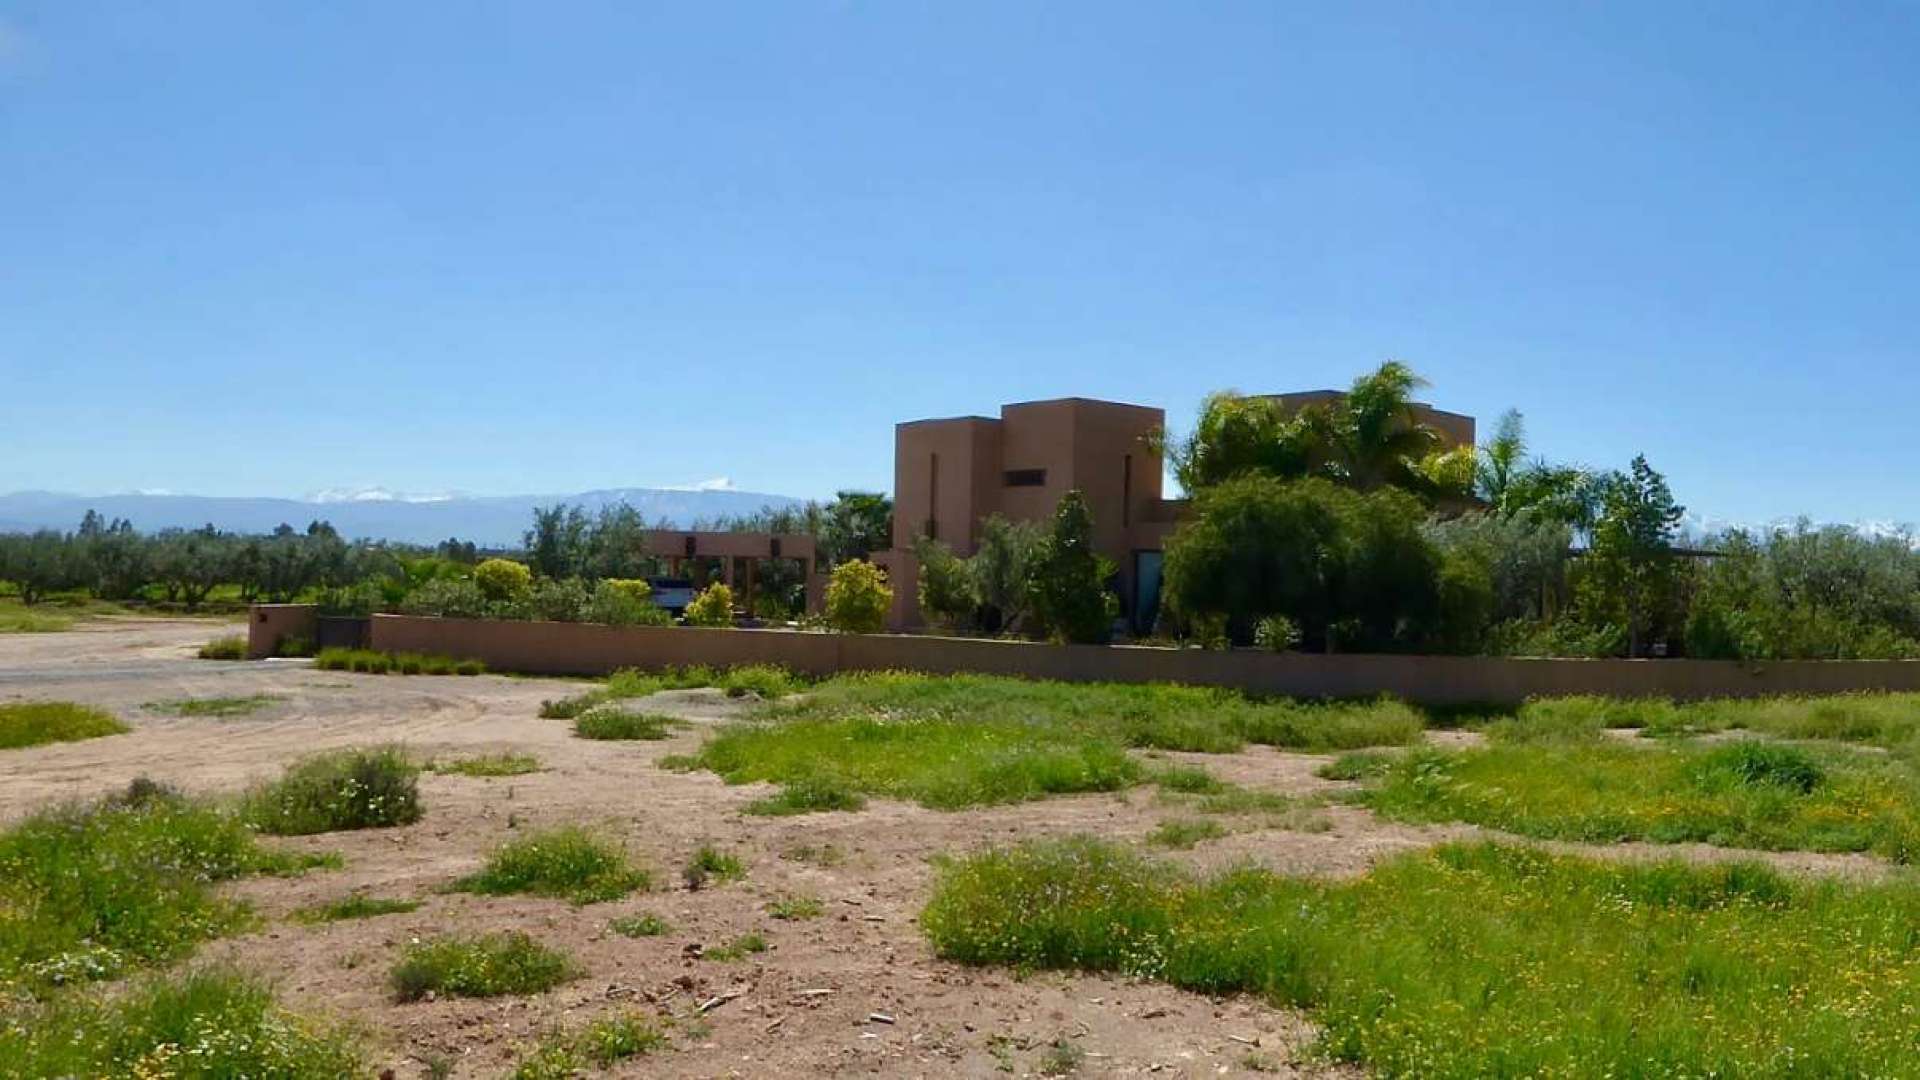 Vente,Terrains & Fermes,Affaire Immobilière à saisir: Projet Immobilier sur 11Ha à proximité des 3 Golfs principaux de Marrakech,Marrakech,Sidi Abdellah Ghiyate